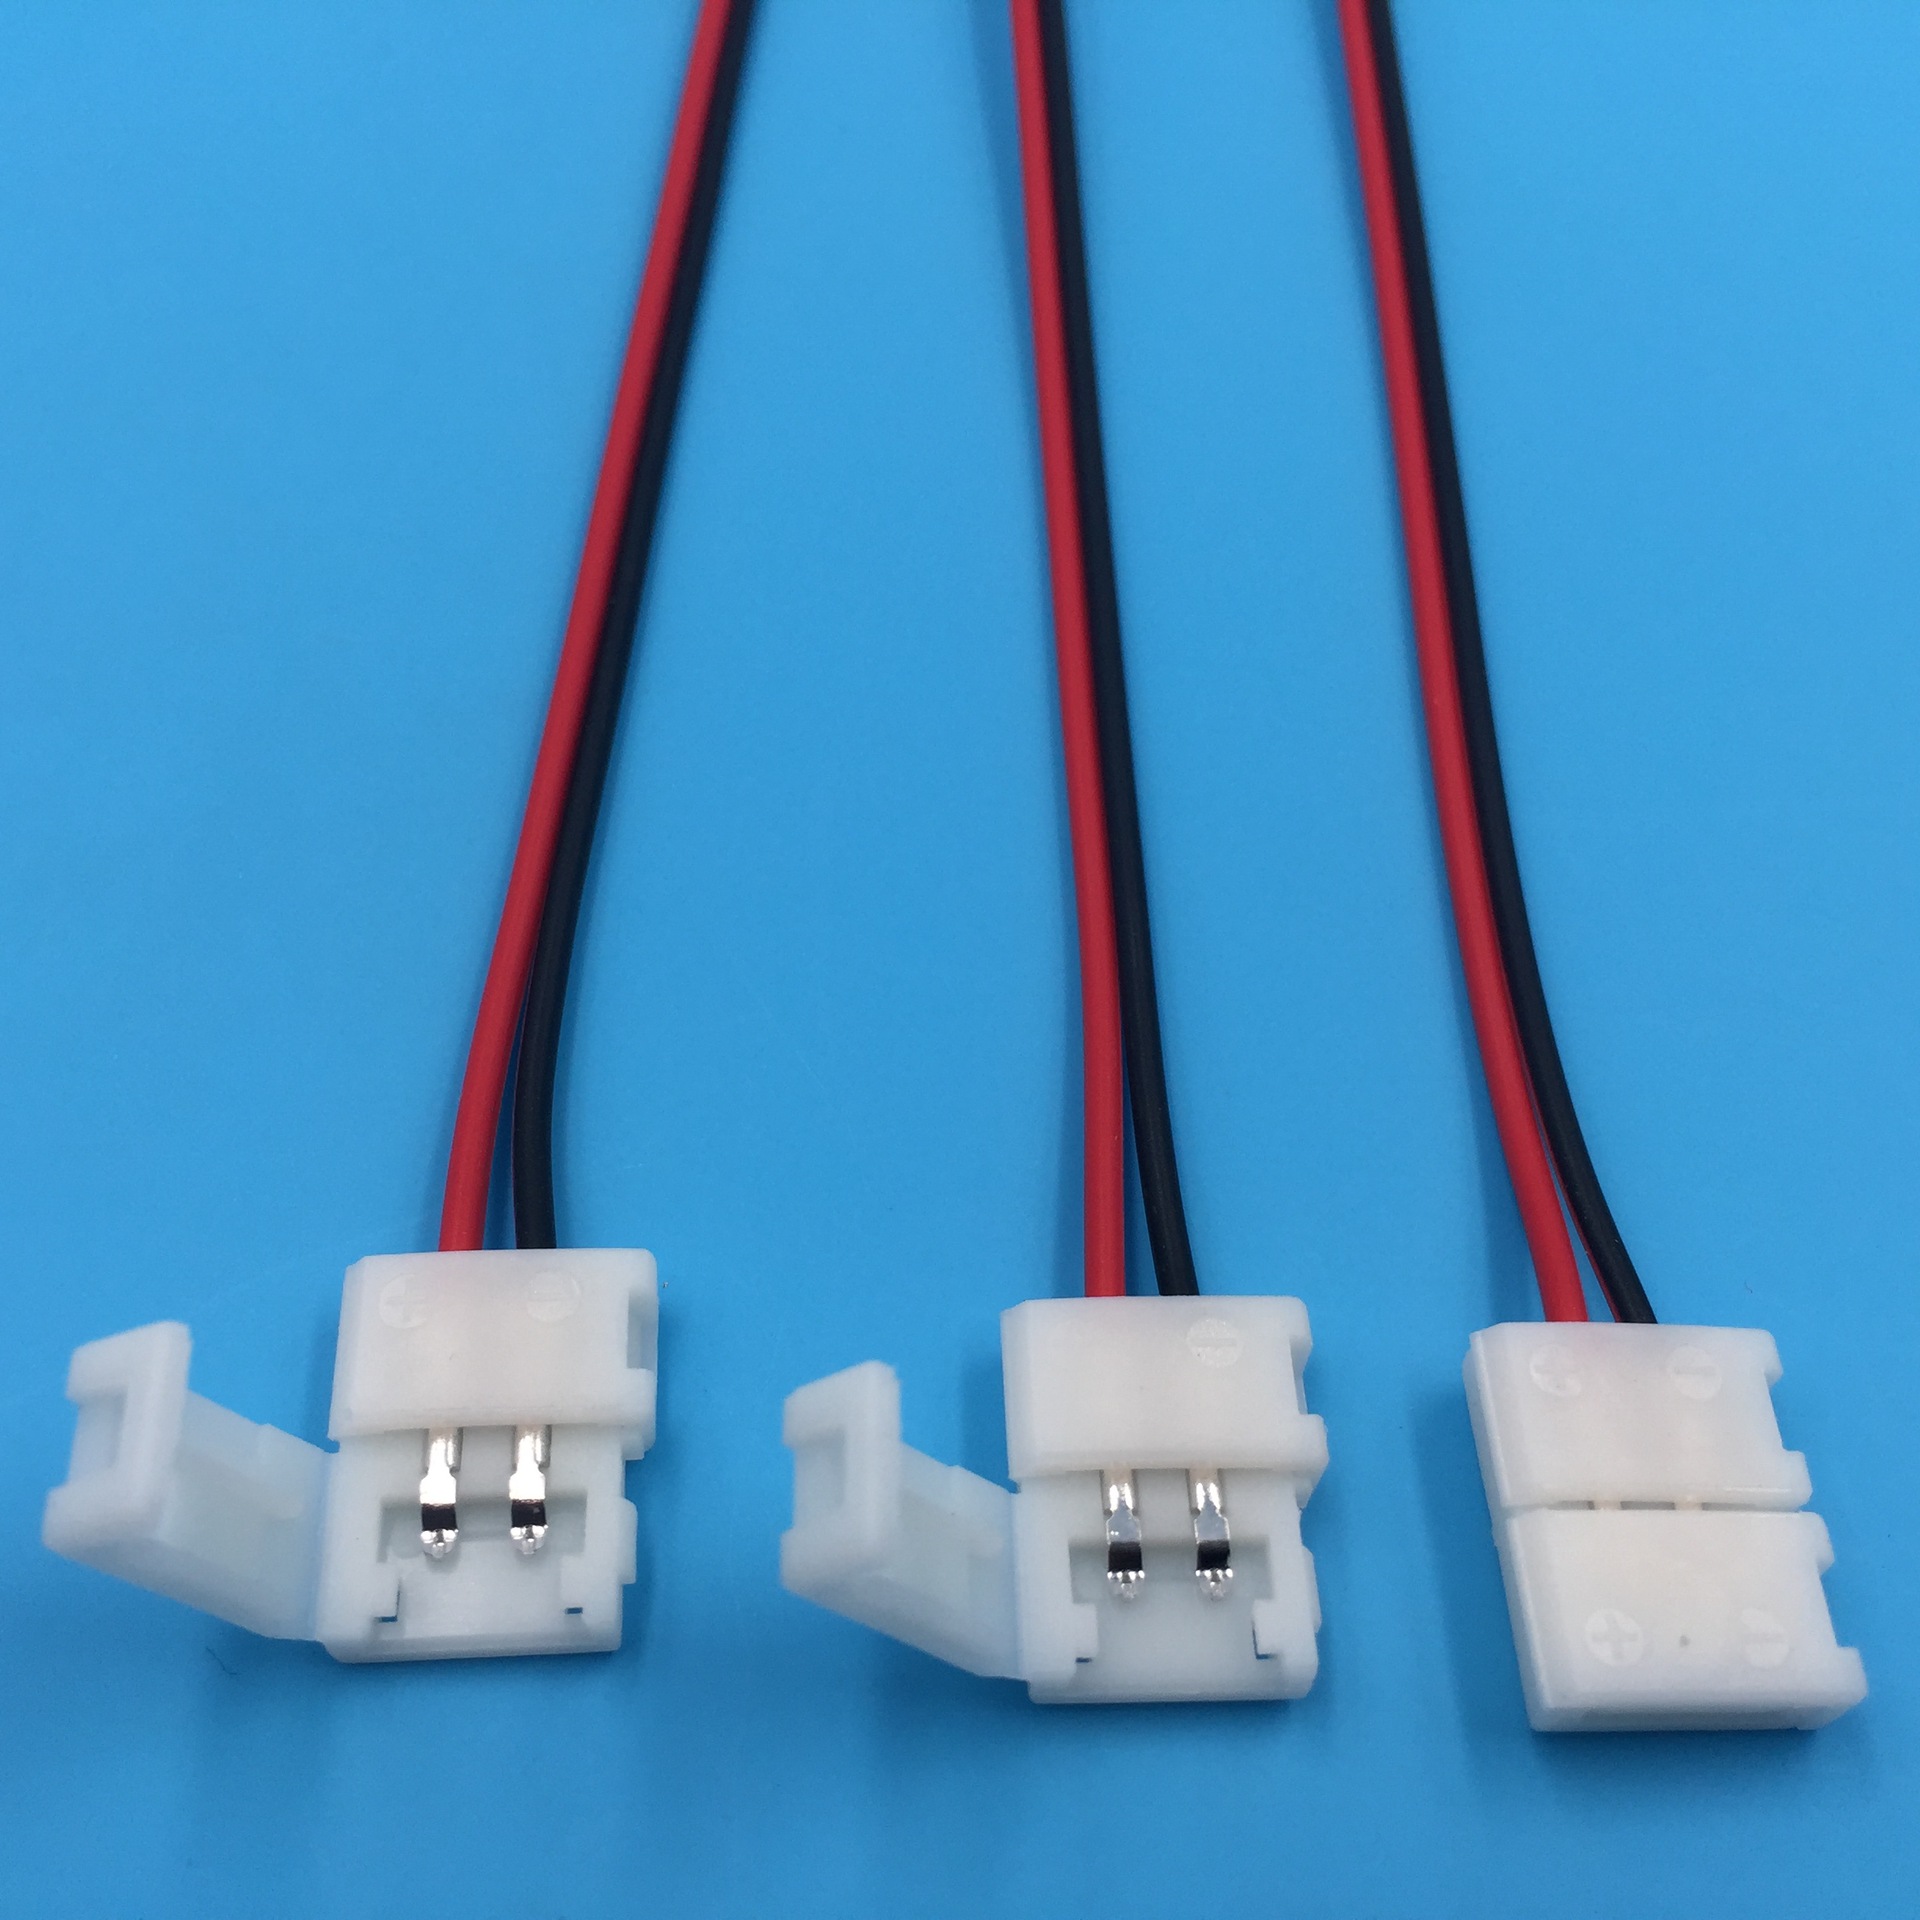 Khớp nối cho led dây dán 12v bản 10mm TL-PK02